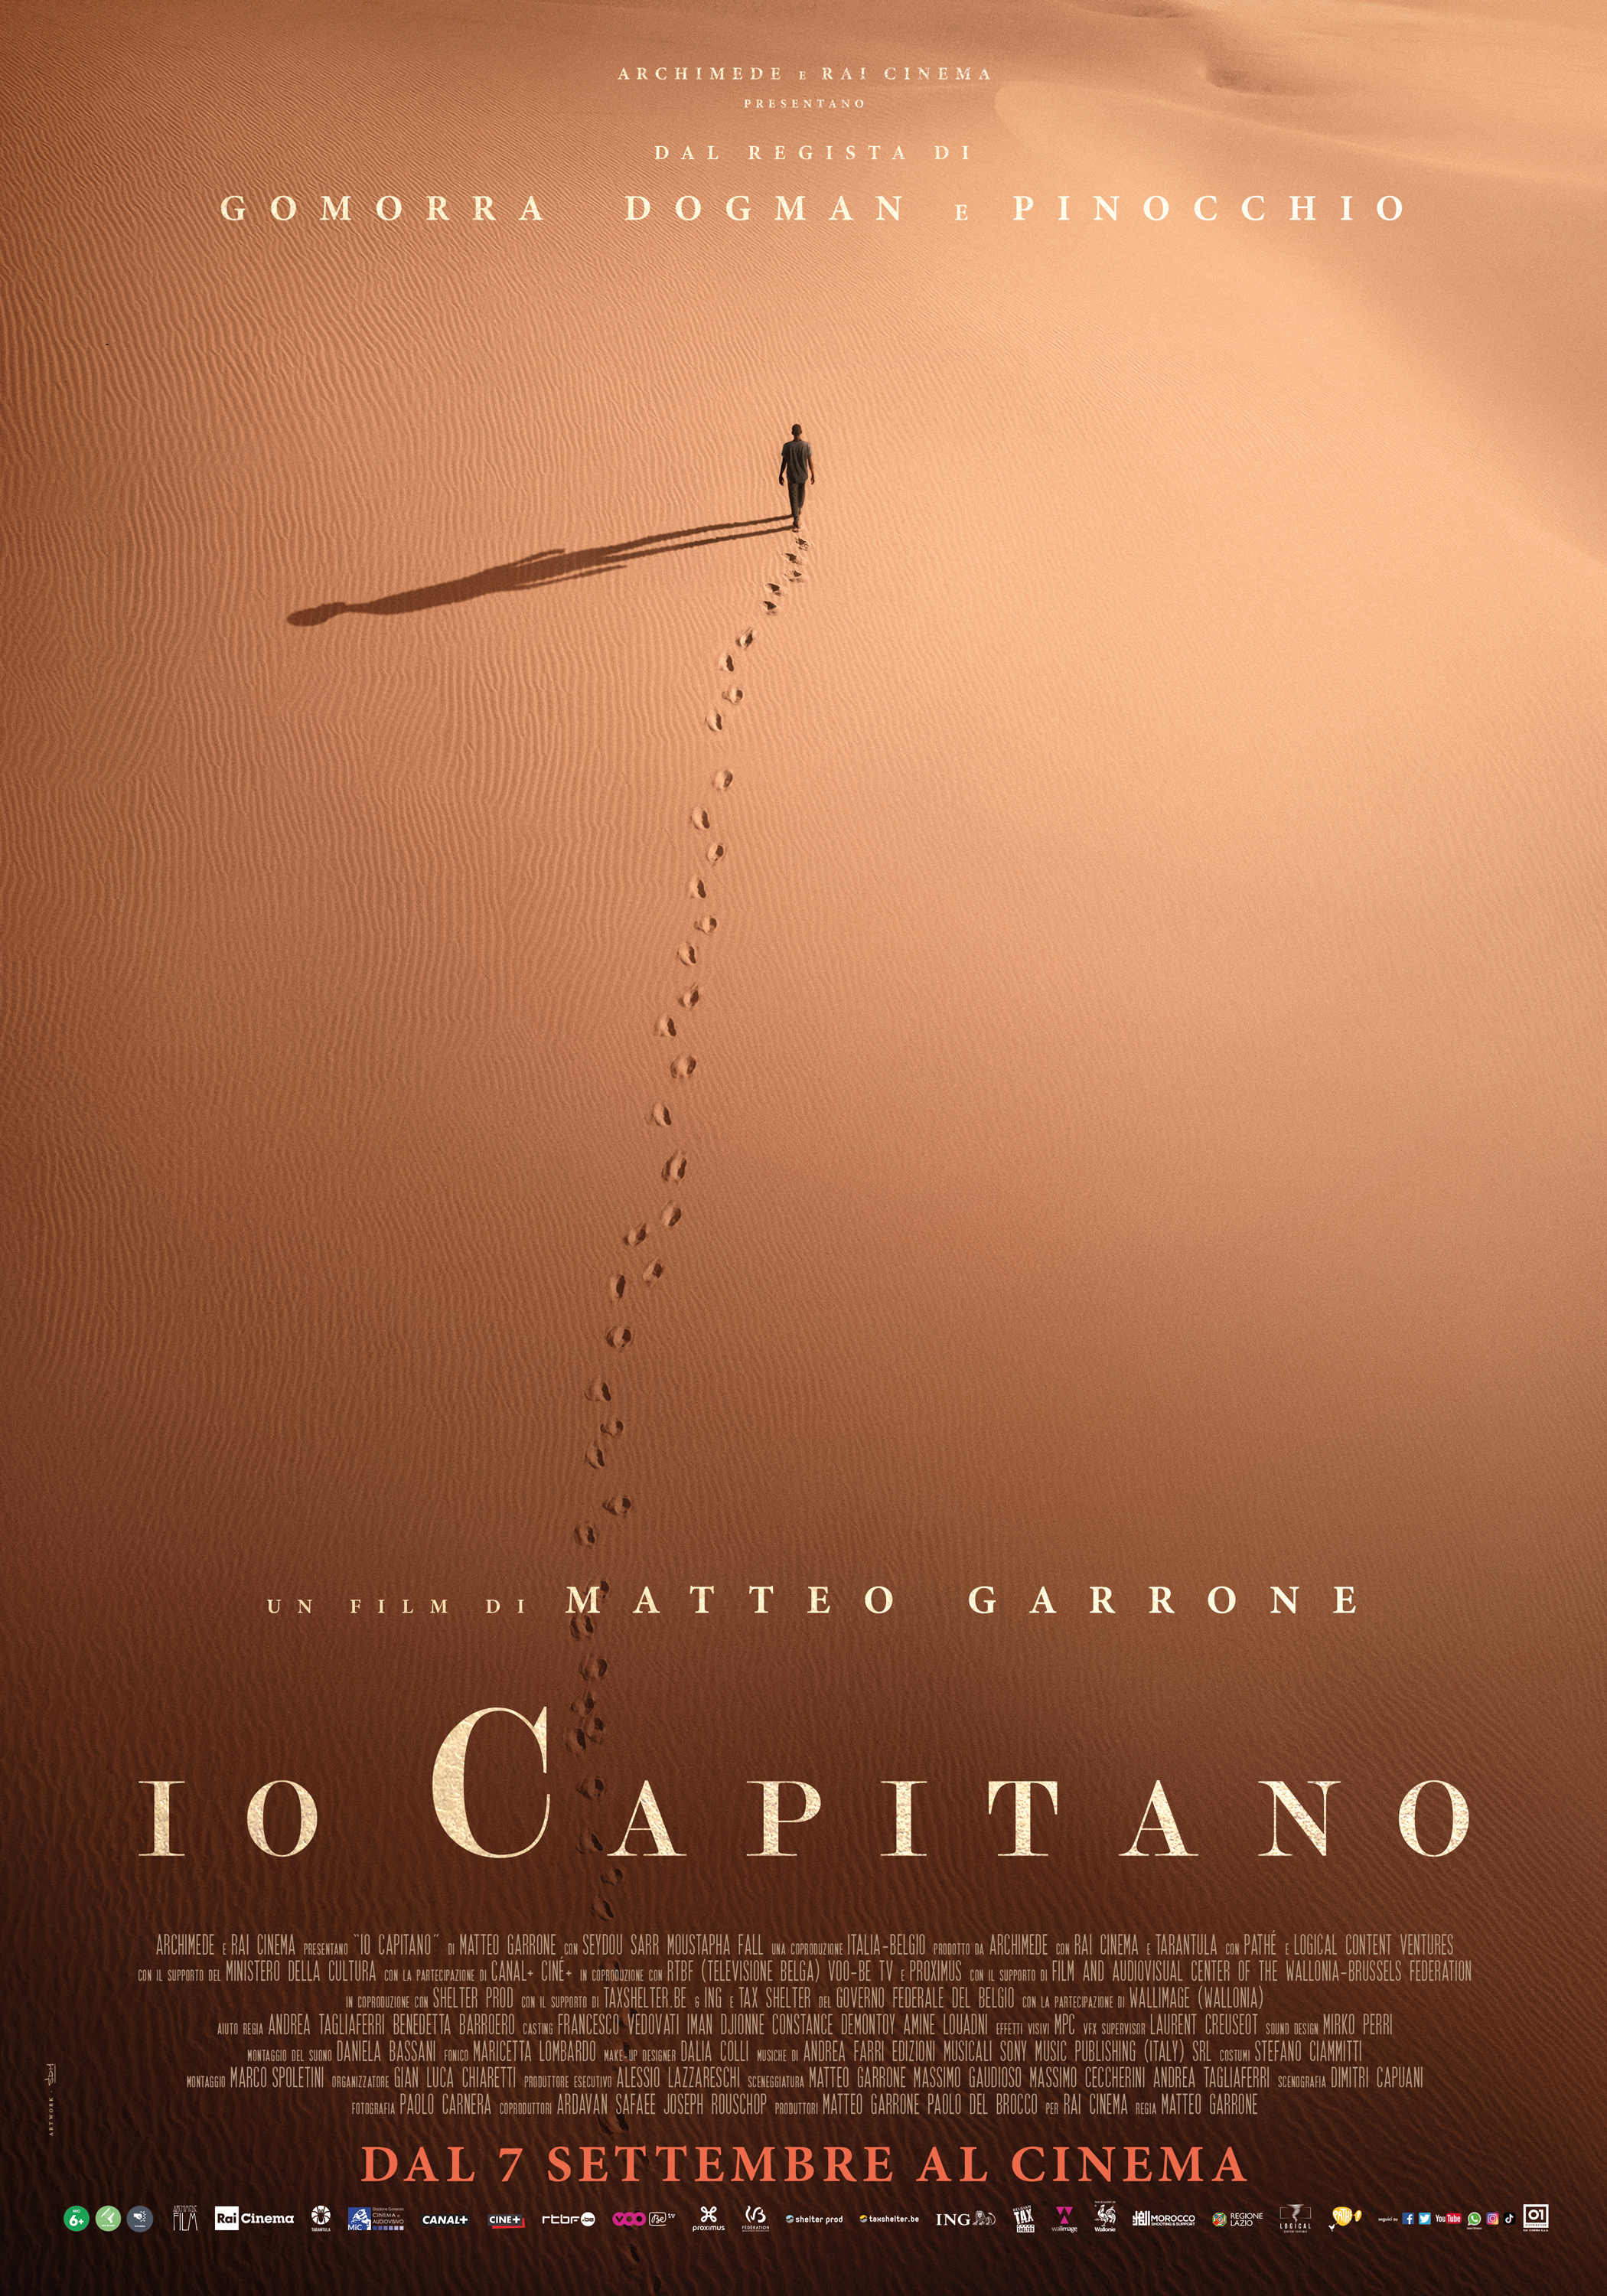 Io Capitano”, il poster del nuovo film di Matteo Garrone | RB Casting